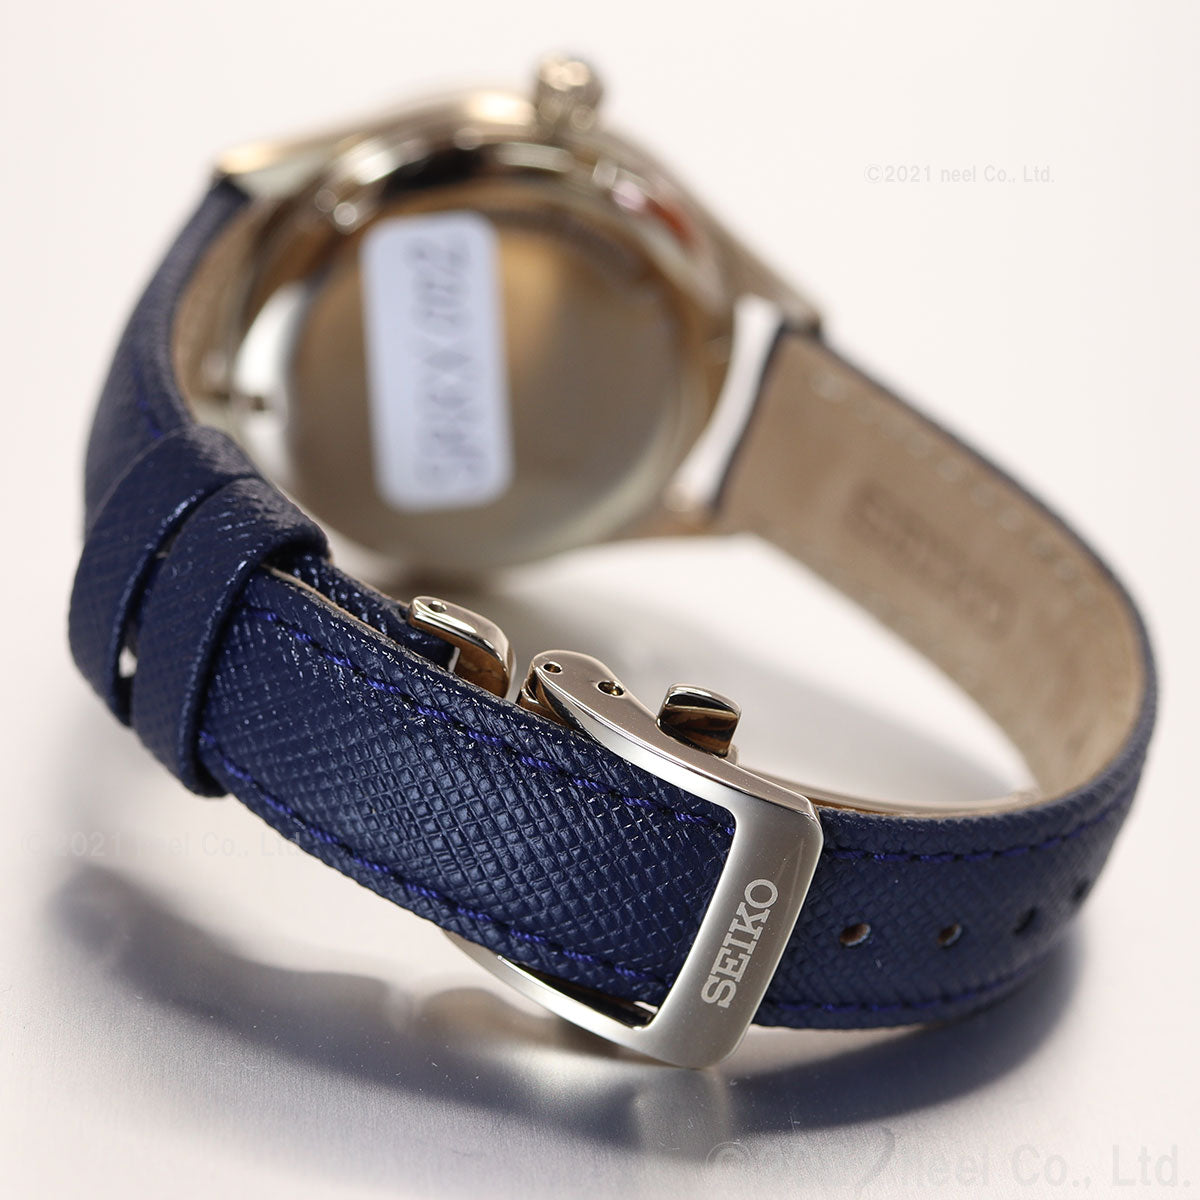 セイコー プレザージュ SEIKO PRESAGE 自動巻き メカニカル コアショップ専用 流通限定モデル 腕時計 レディース SRRX002 プレステージライン 琺瑯ダイヤル